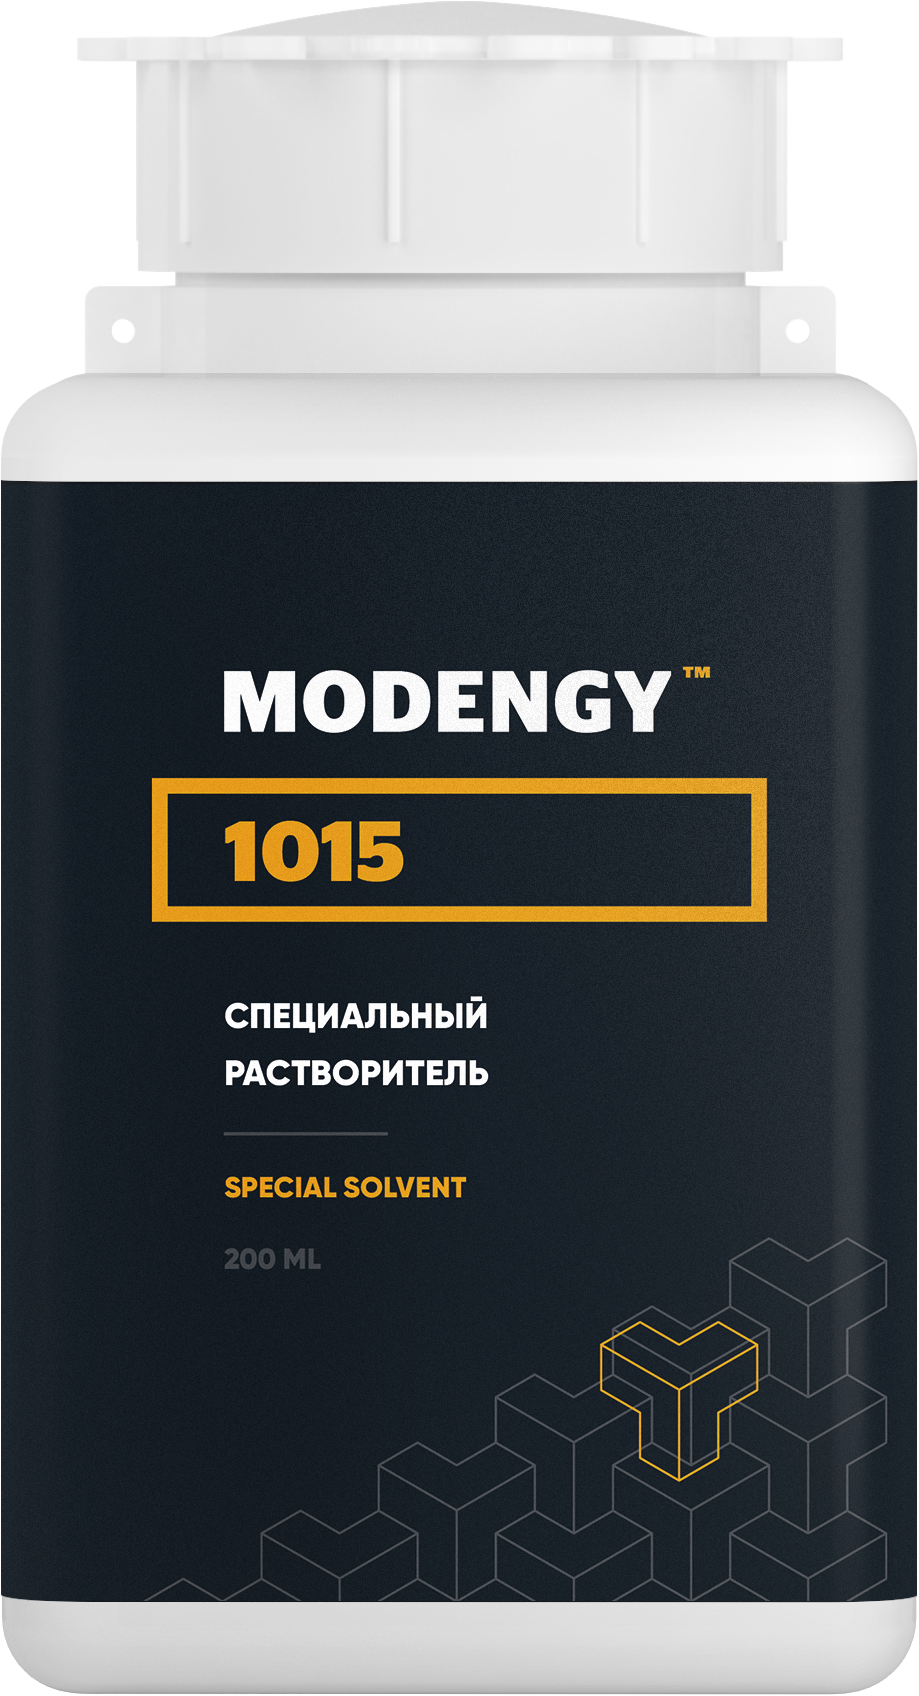 Специальный растворитель MODENGY 1015 (200 мл) специальный очиститель активатор modengy 1 л